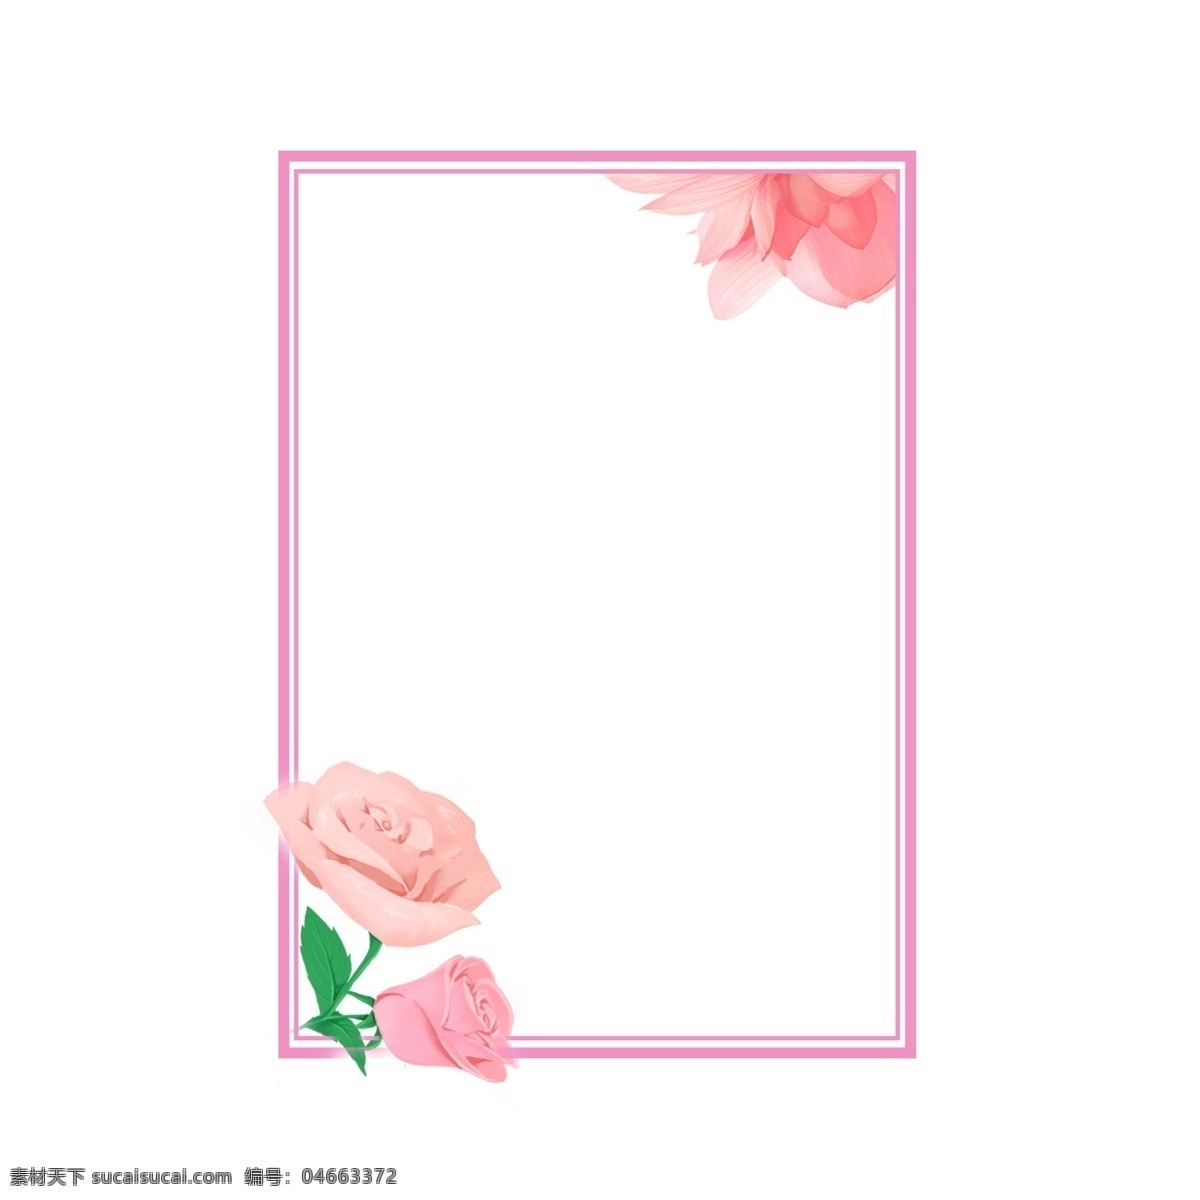 520 情人节 唯美 边框 唯美边框 卡通 可爱边框 清新边框 彩色边框 粉红色边框 浪漫边框 粉红色玫瑰花 花朵